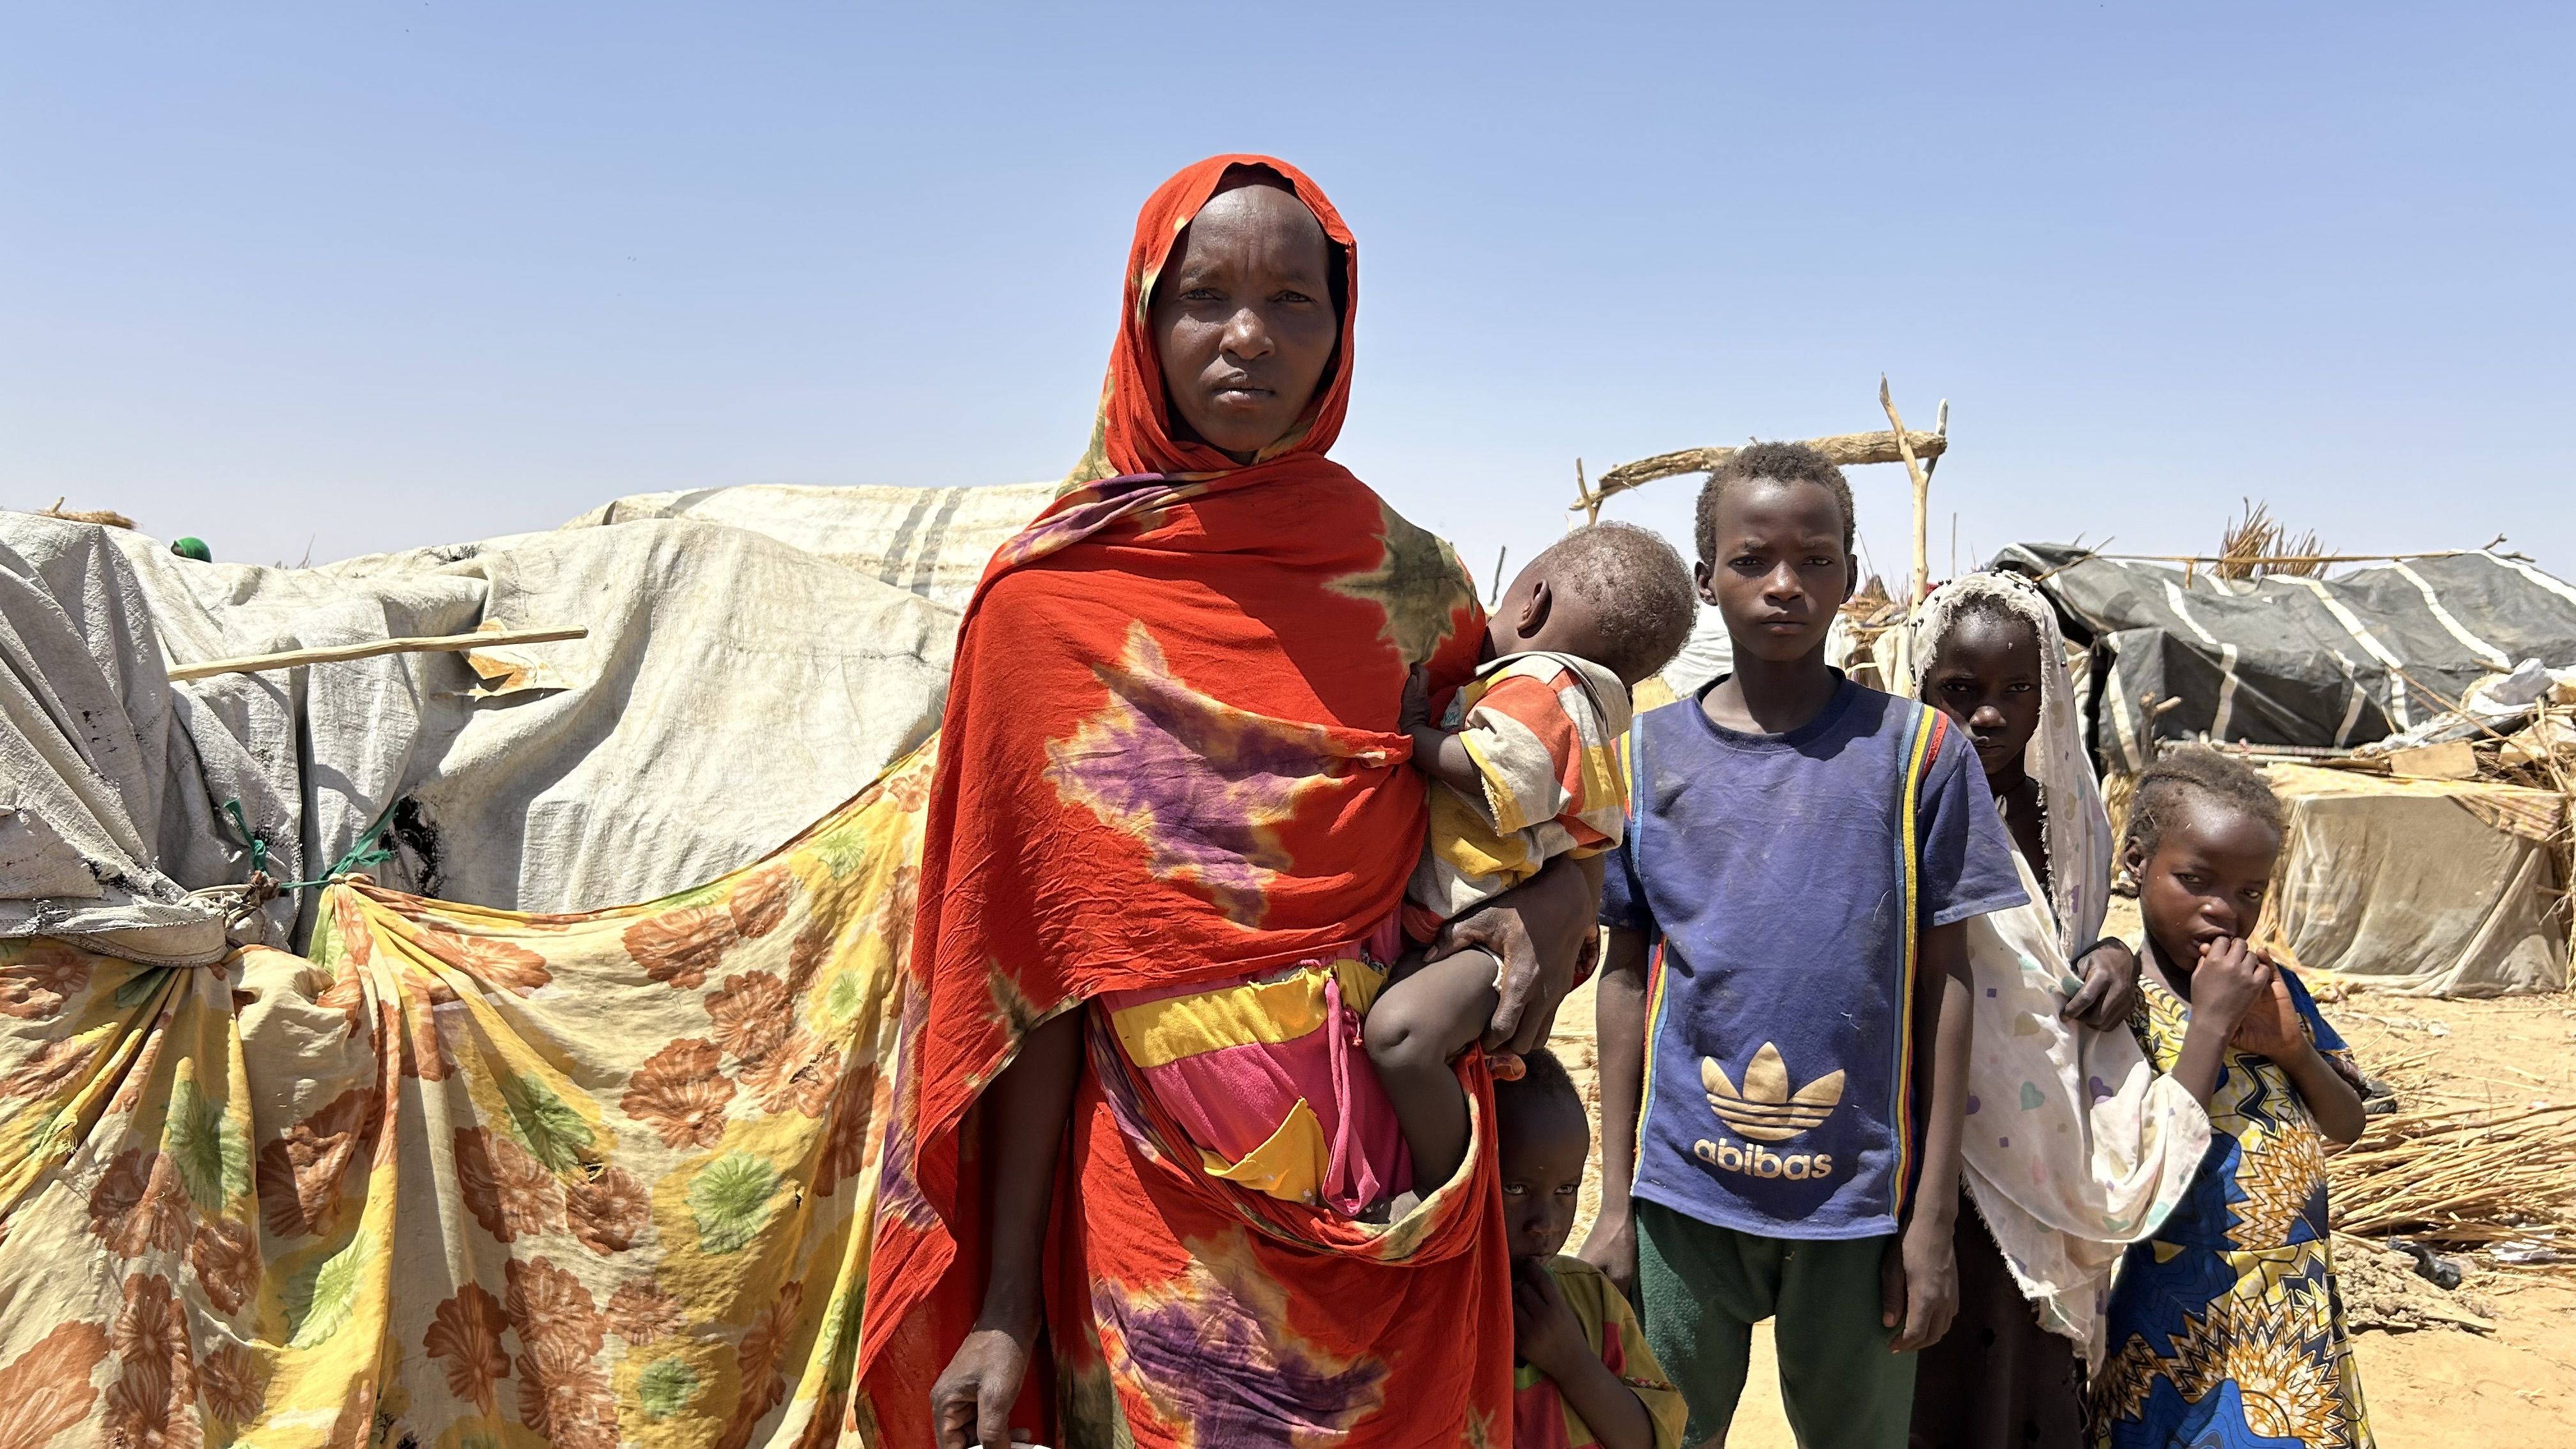 Hace cuatro meses, Khartouma encontró refugio en Adré, al este de Chad, tras huir de la violencia extrema y los enfrentamientos en su pueblo de Ardamata, en Darfur Occidental (Sudán). Con sus seis hijos, de edades comprendidas entre los 9 meses y los 15 años, sigue luchando por vivir en el campamento de tránsito para refugiados de Adré, con un acceso muy limitado a los servicios básicos esenciales. Desde el estallido del conflicto, 550.000 refugiados sudaneses han huido al este de Chad y siguen viviendo en condiciones terribles, con una carencia desesperada de alimentos, agua y sin unas condiciones sanitarias mínimas. Foto: MSF